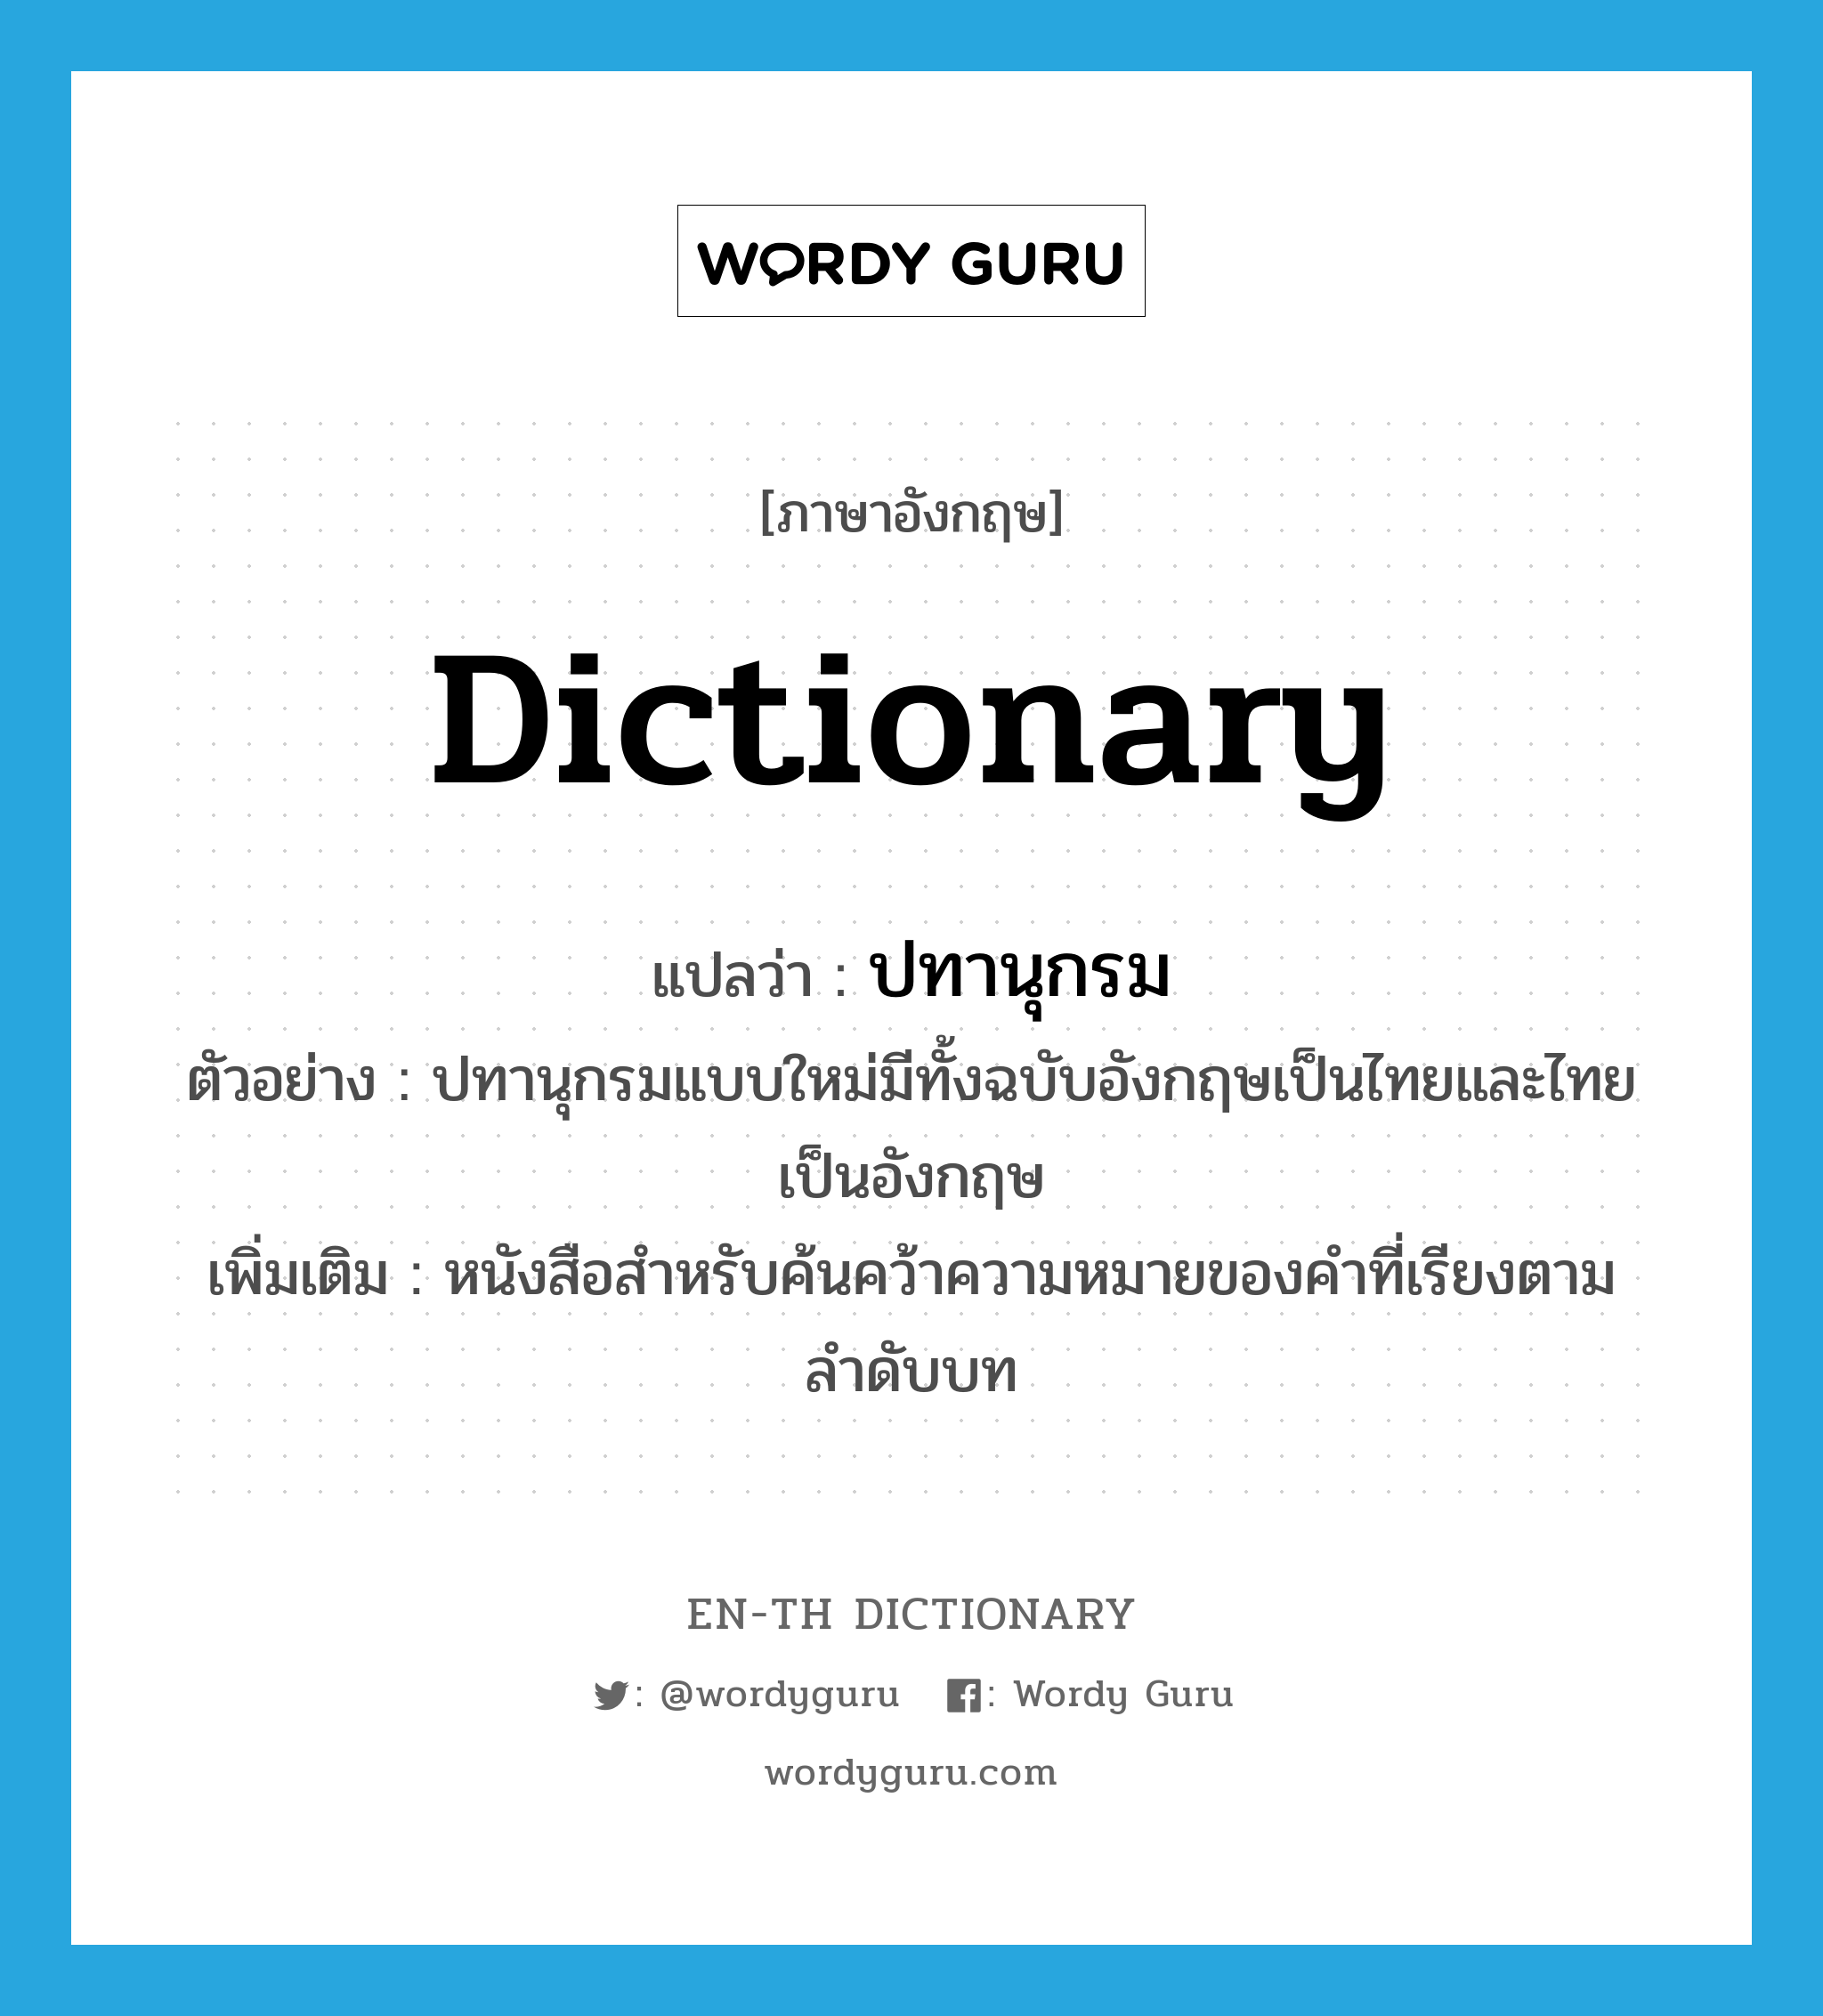 ปทานุกรม ภาษาอังกฤษ?, คำศัพท์ภาษาอังกฤษ ปทานุกรม แปลว่า dictionary ประเภท N ตัวอย่าง ปทานุกรมแบบใหม่มีทั้งฉบับอังกฤษเป็นไทยและไทยเป็นอังกฤษ เพิ่มเติม หนังสือสำหรับค้นคว้าความหมายของคำที่เรียงตามลำดับบท หมวด N